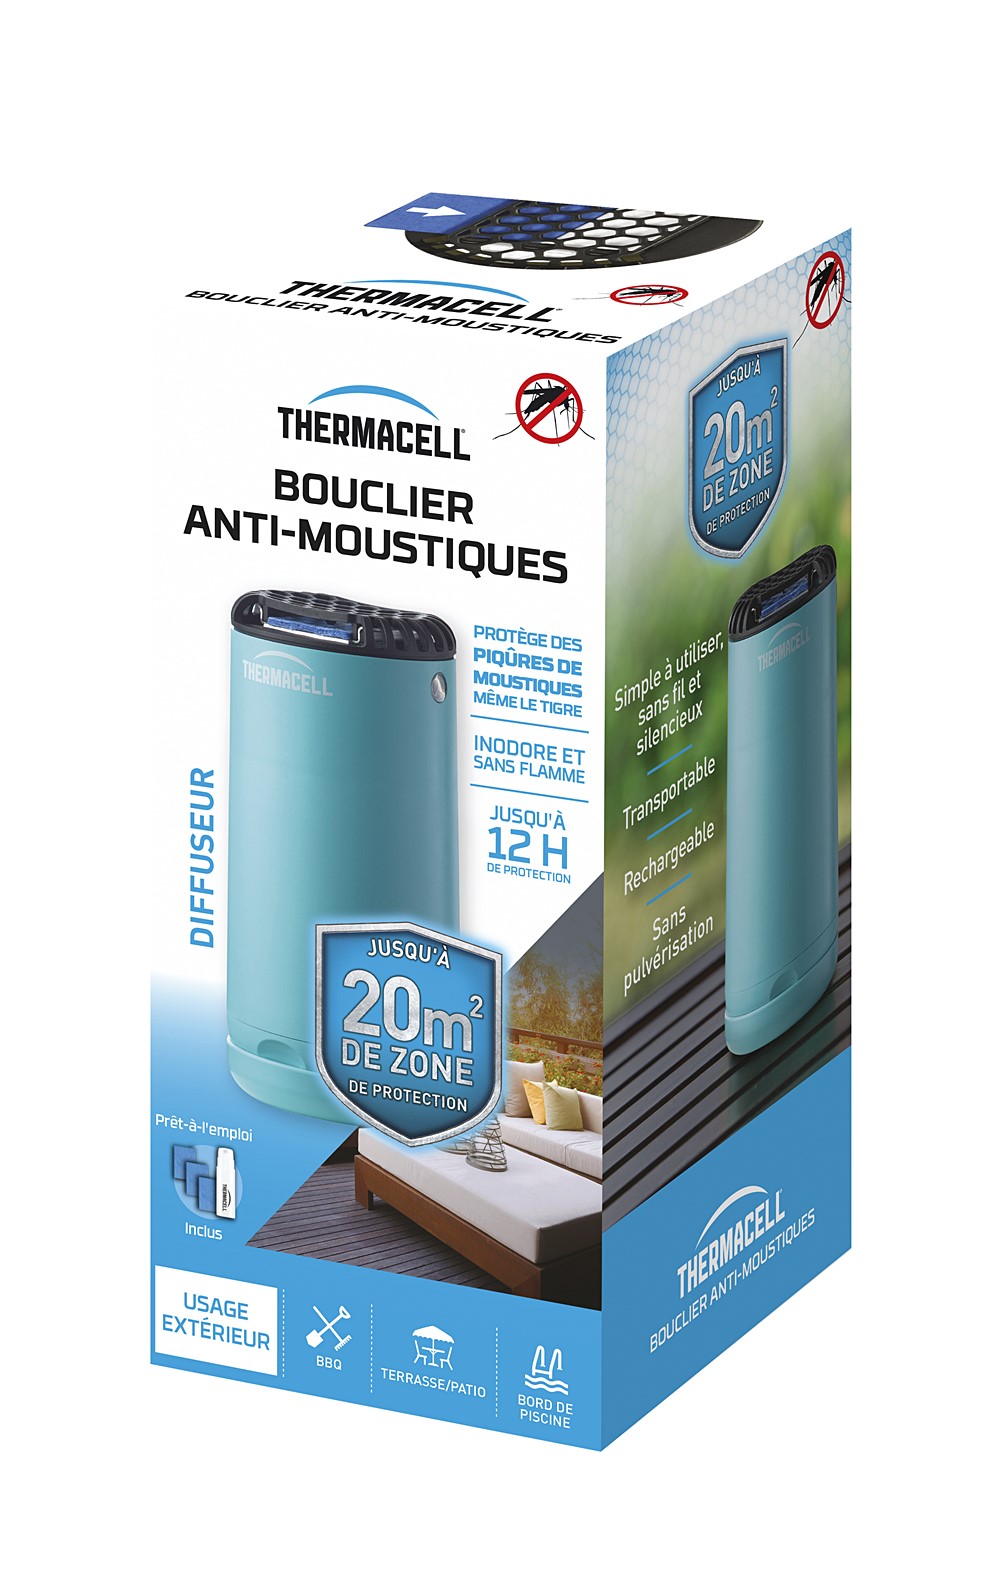 Bouclier anti-moustiques diffuseur bleu + 1 Cartouche de Butane + 3 Plaquettes de 4H - THERMACELL 